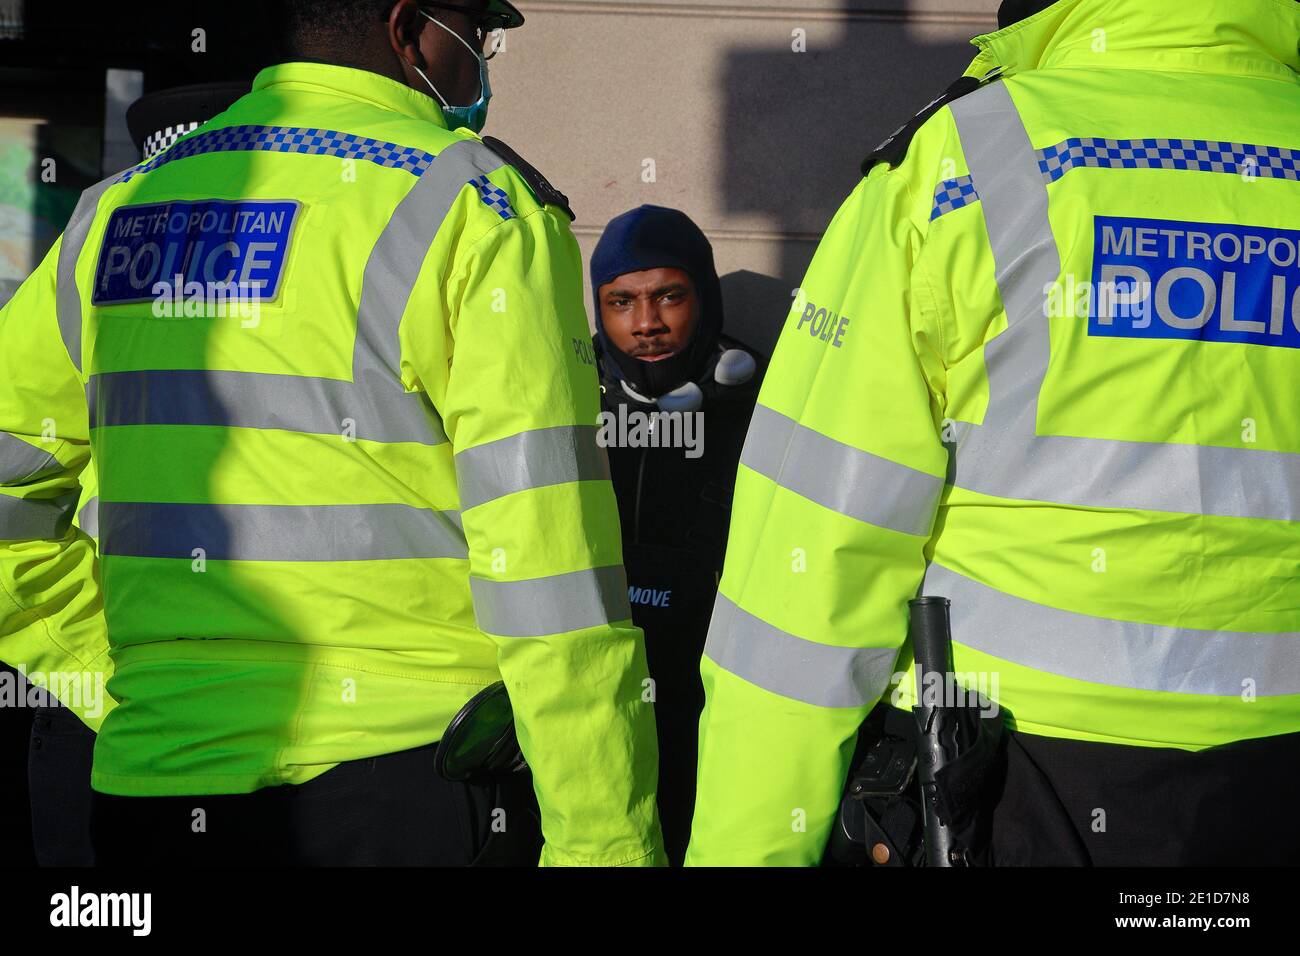 Londres (Royaume-Uni), 6 janvier 2021 : des militants protestent à Westminster contre des restrictions de 19 000 Covid suite à l'annonce par le gouvernement d'un confinement national. Banque D'Images